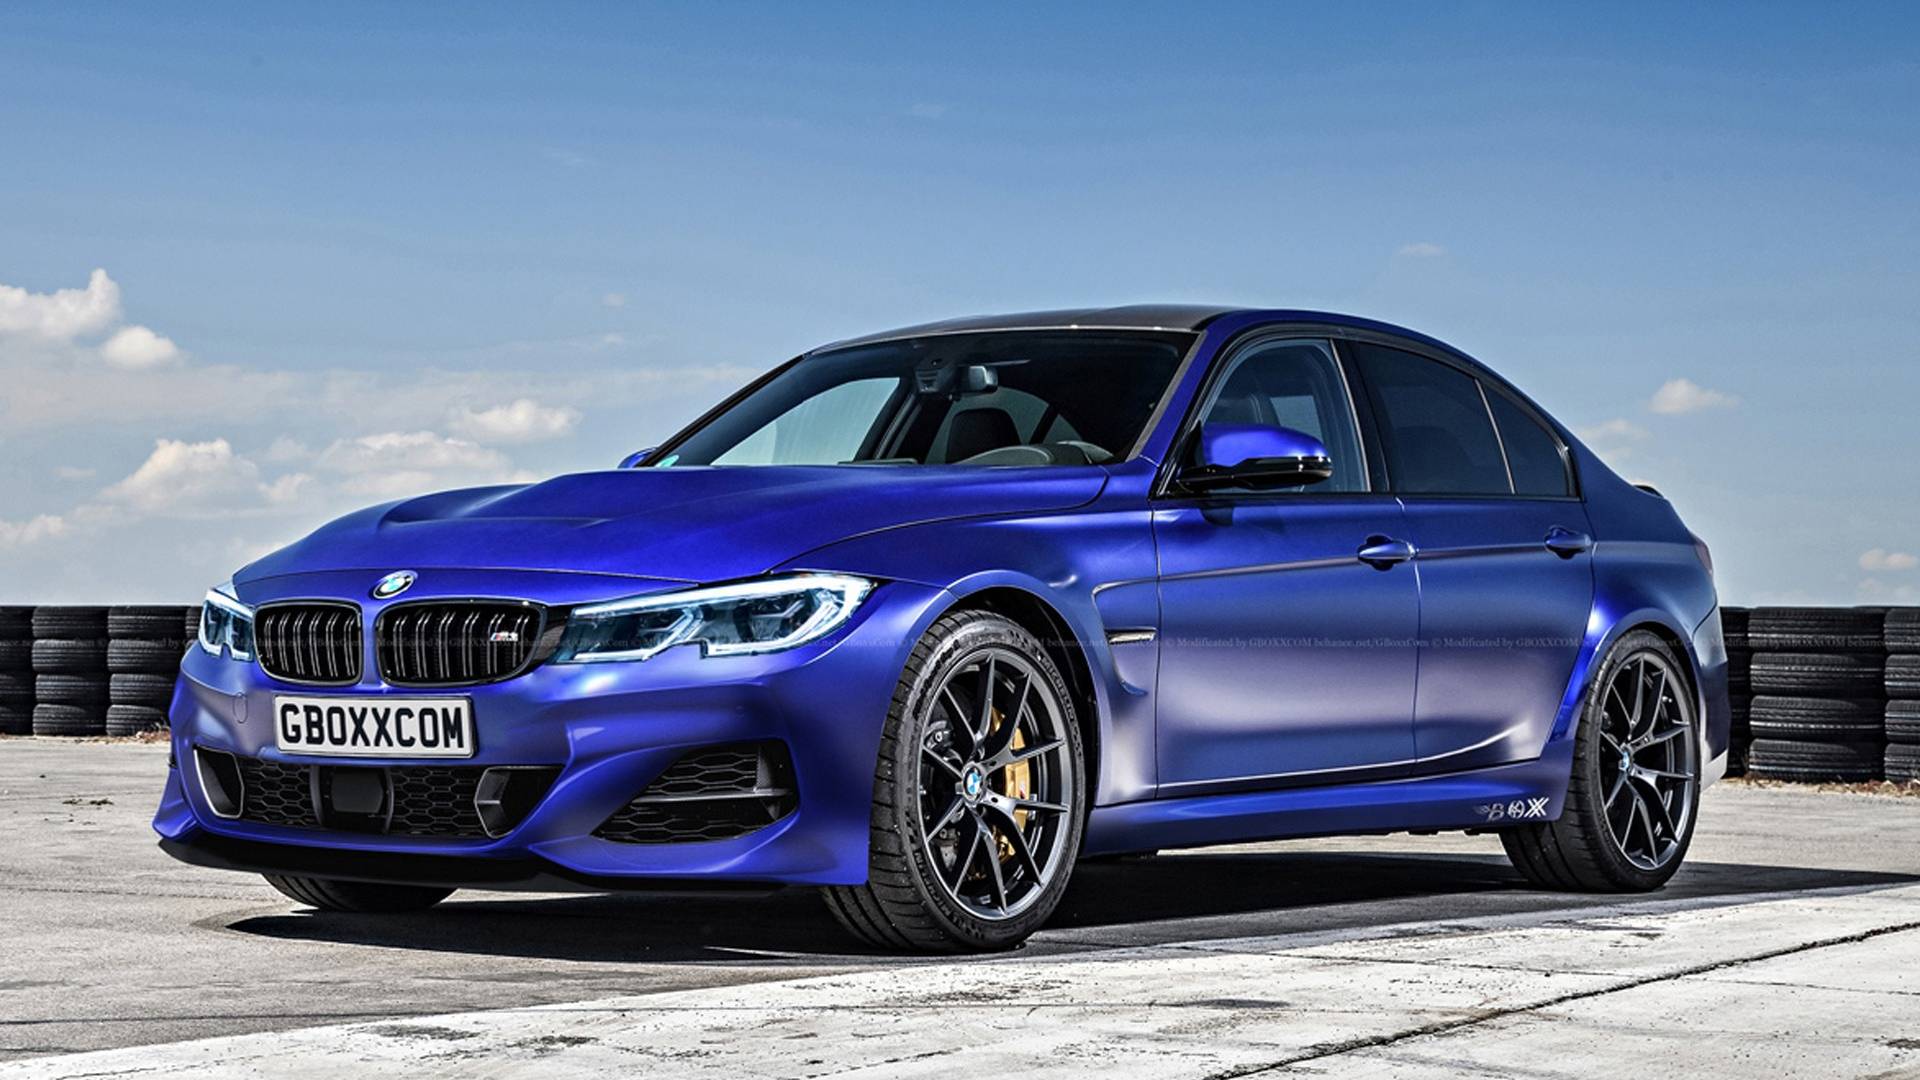 BMW raskryla podrobnosti o novom avto M3